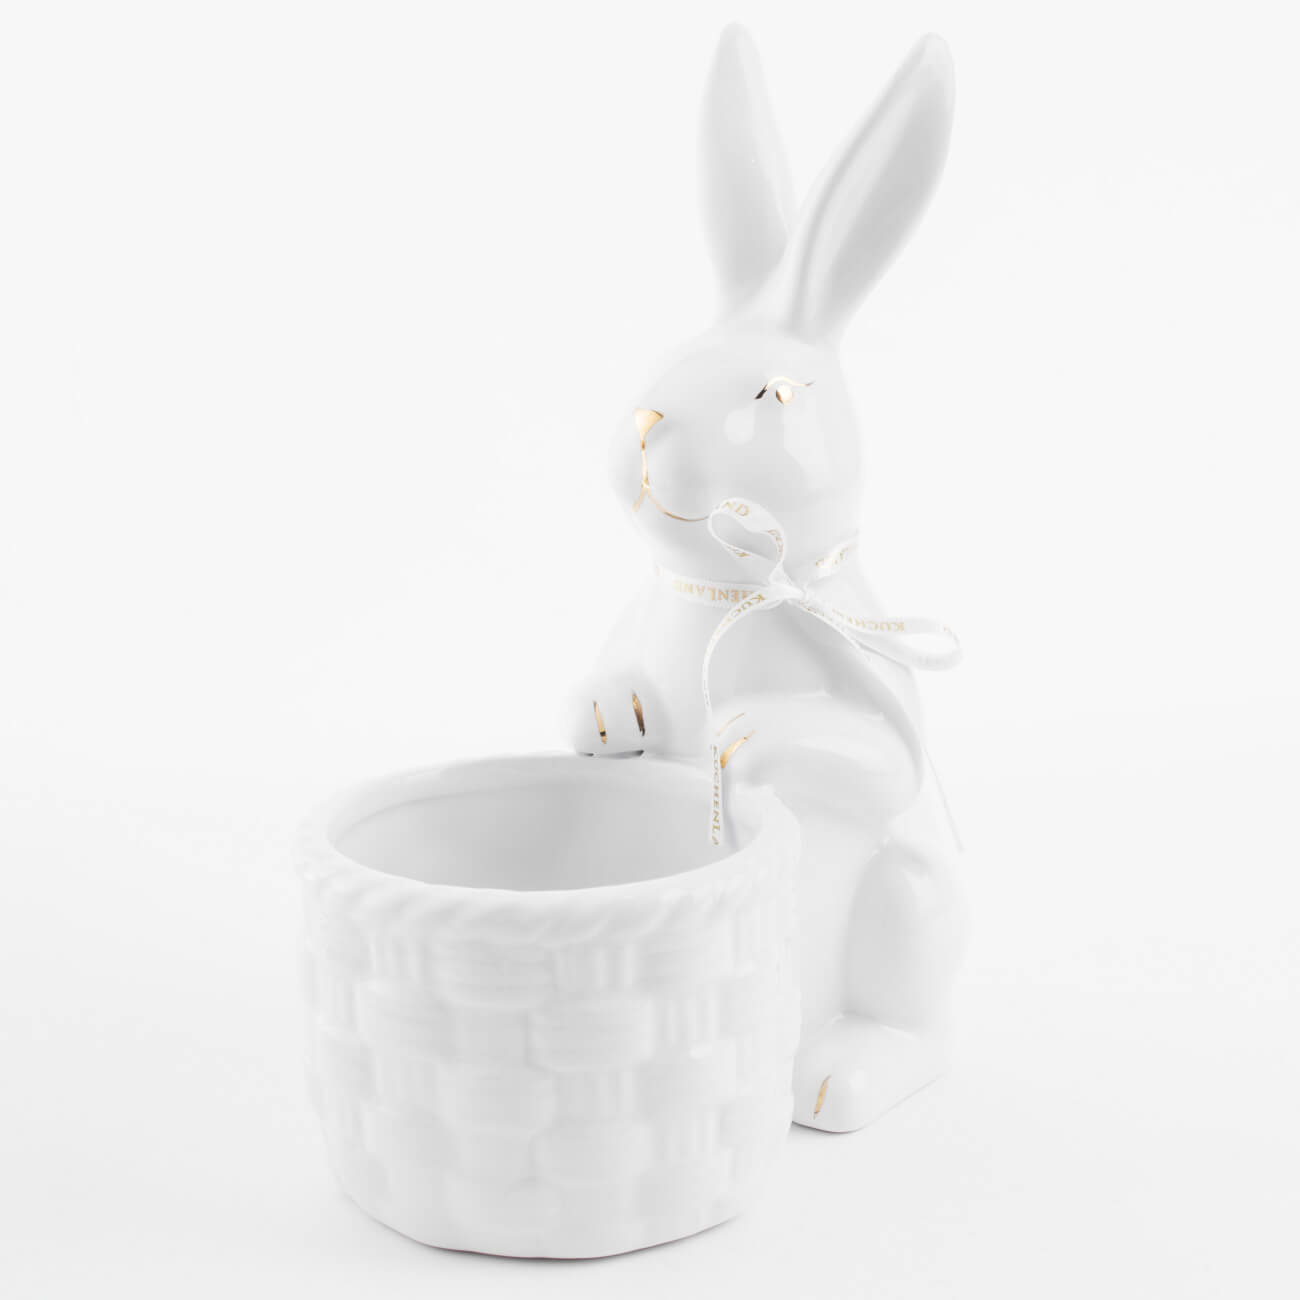 Конфетница, 18x23 см, керамика, бело-золотистая, Кролик с плетенной корзиной, Easter gold конфетница 12х14 см с ручкой керамика белая кролик на корзине easter gold